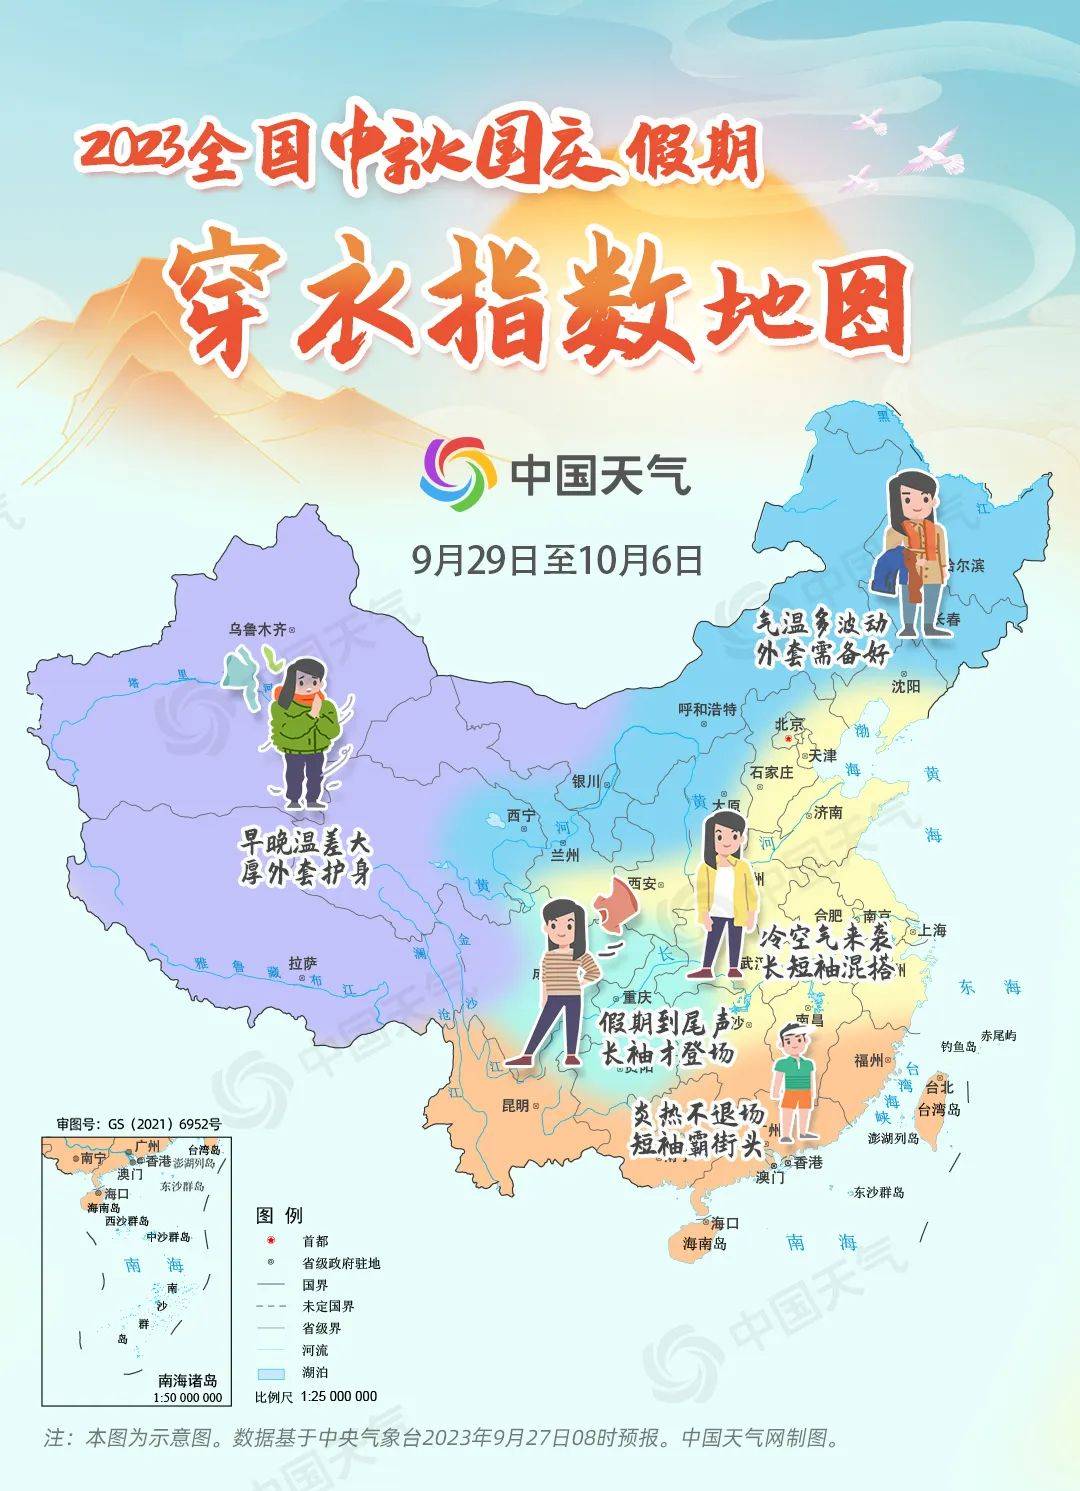 从中国天气网的全国中秋国庆假期穿衣指数地图来看,假期里,东北地区